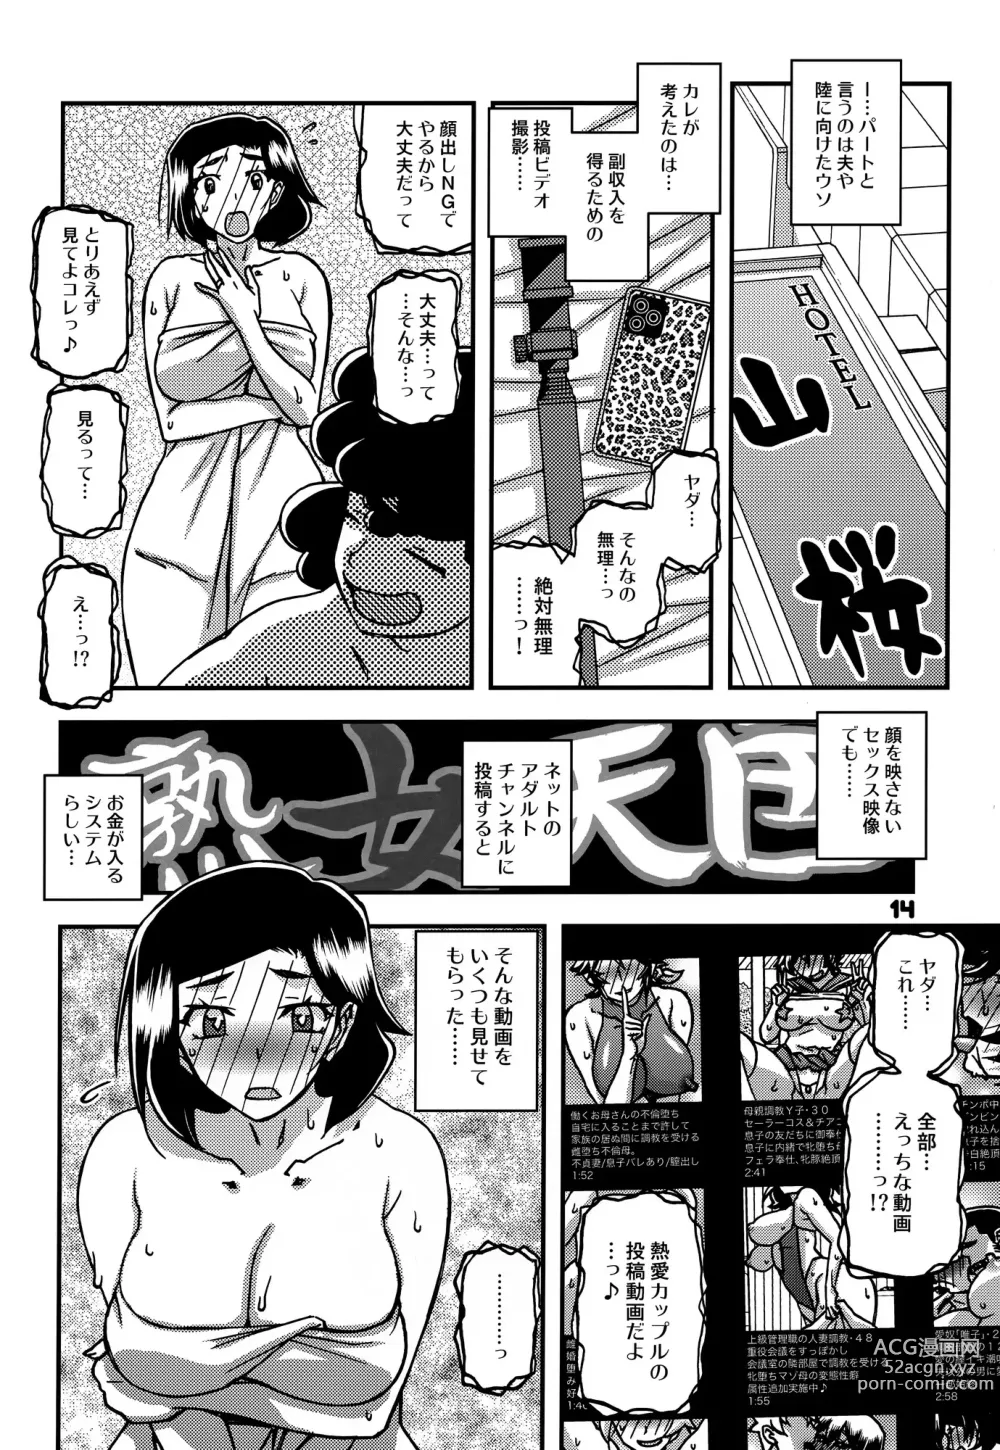 Page 13 of doujinshi Akebi no Mi - Misora AFTER